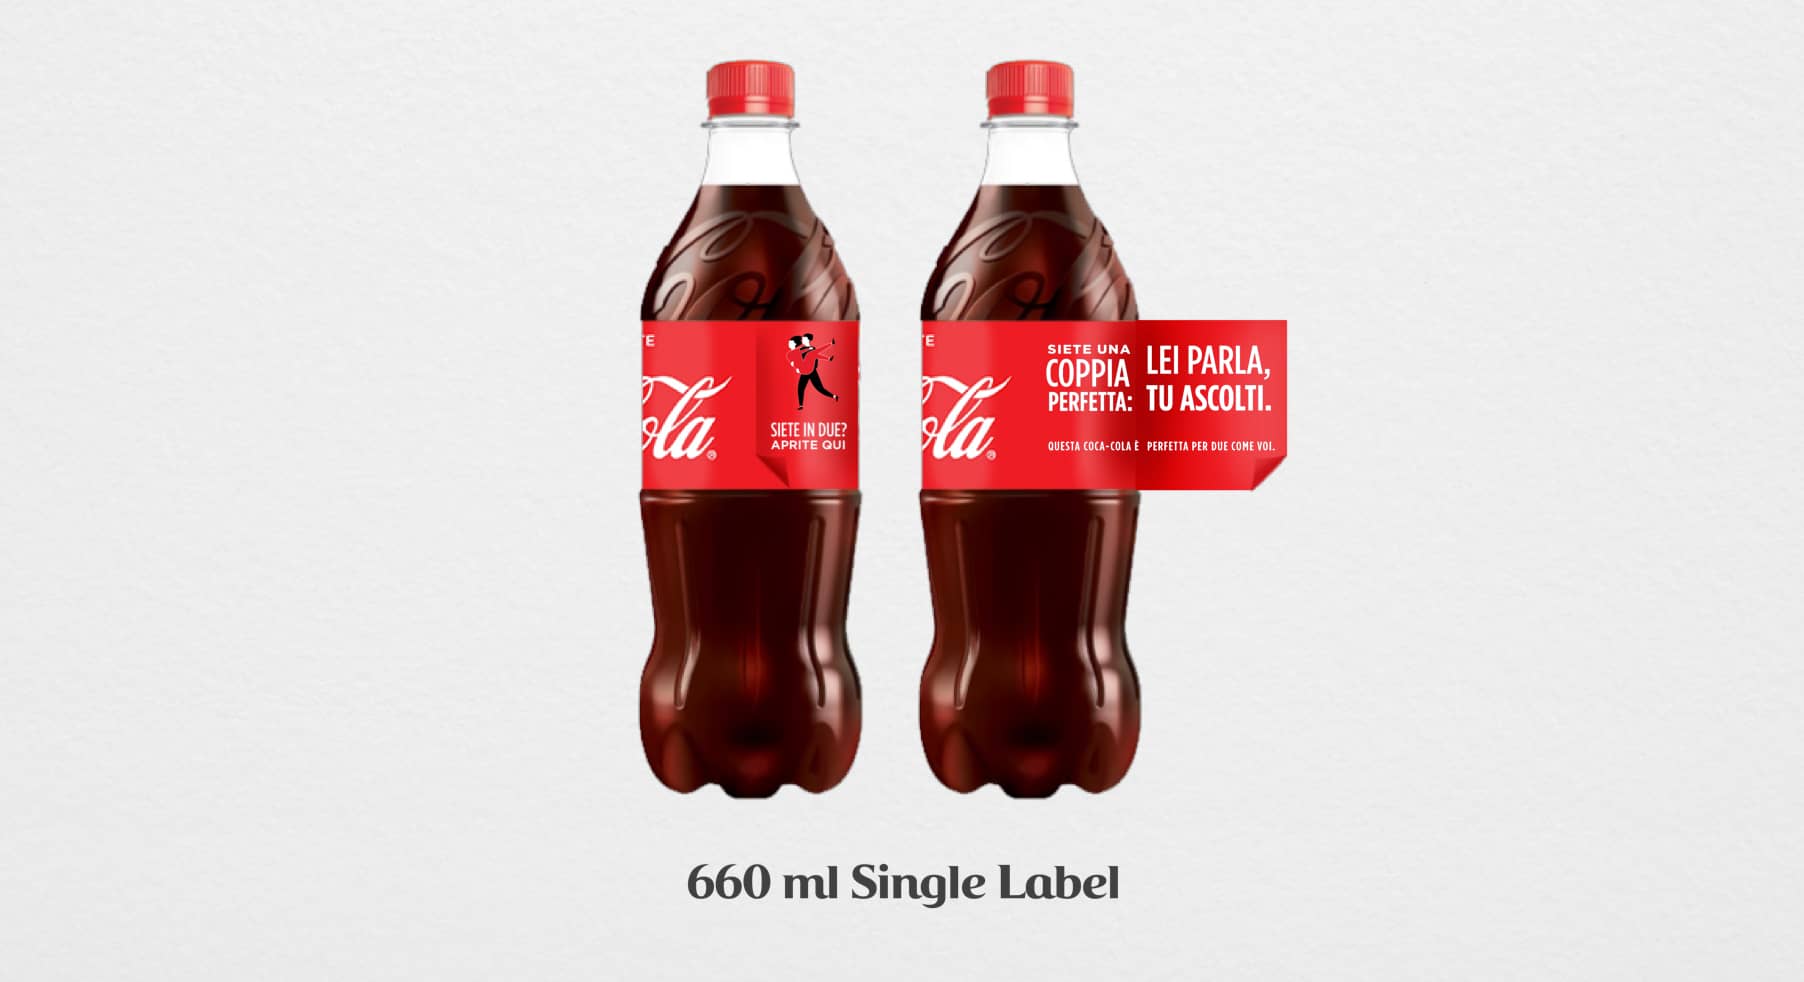 Coca-Cola label design copywriting coppia perfetta mockup